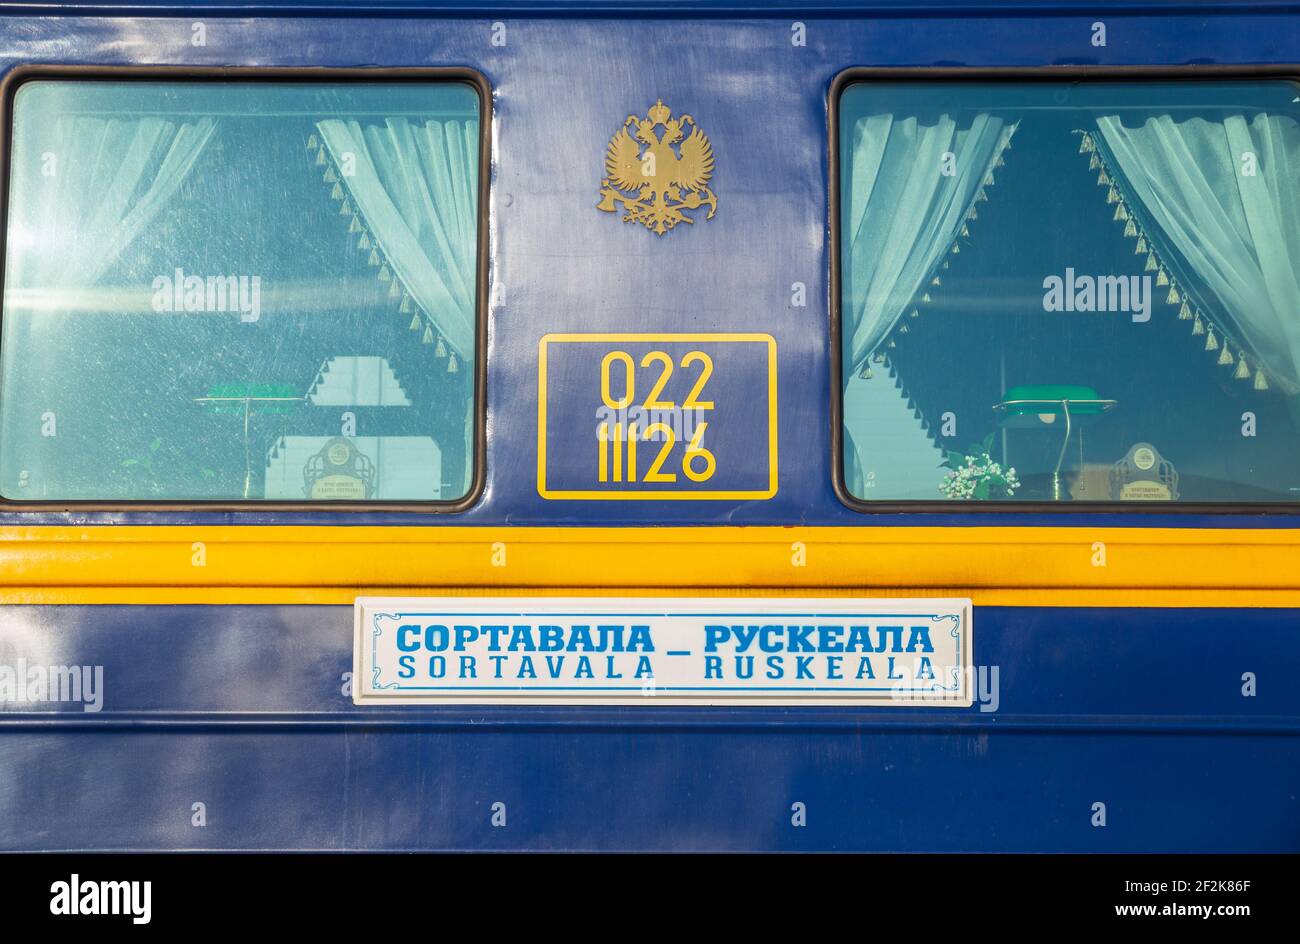 SORTAVALA, RUSSIA - 10 MARZO 2021: Finestre del treno retrò Ruskeala Express Foto Stock